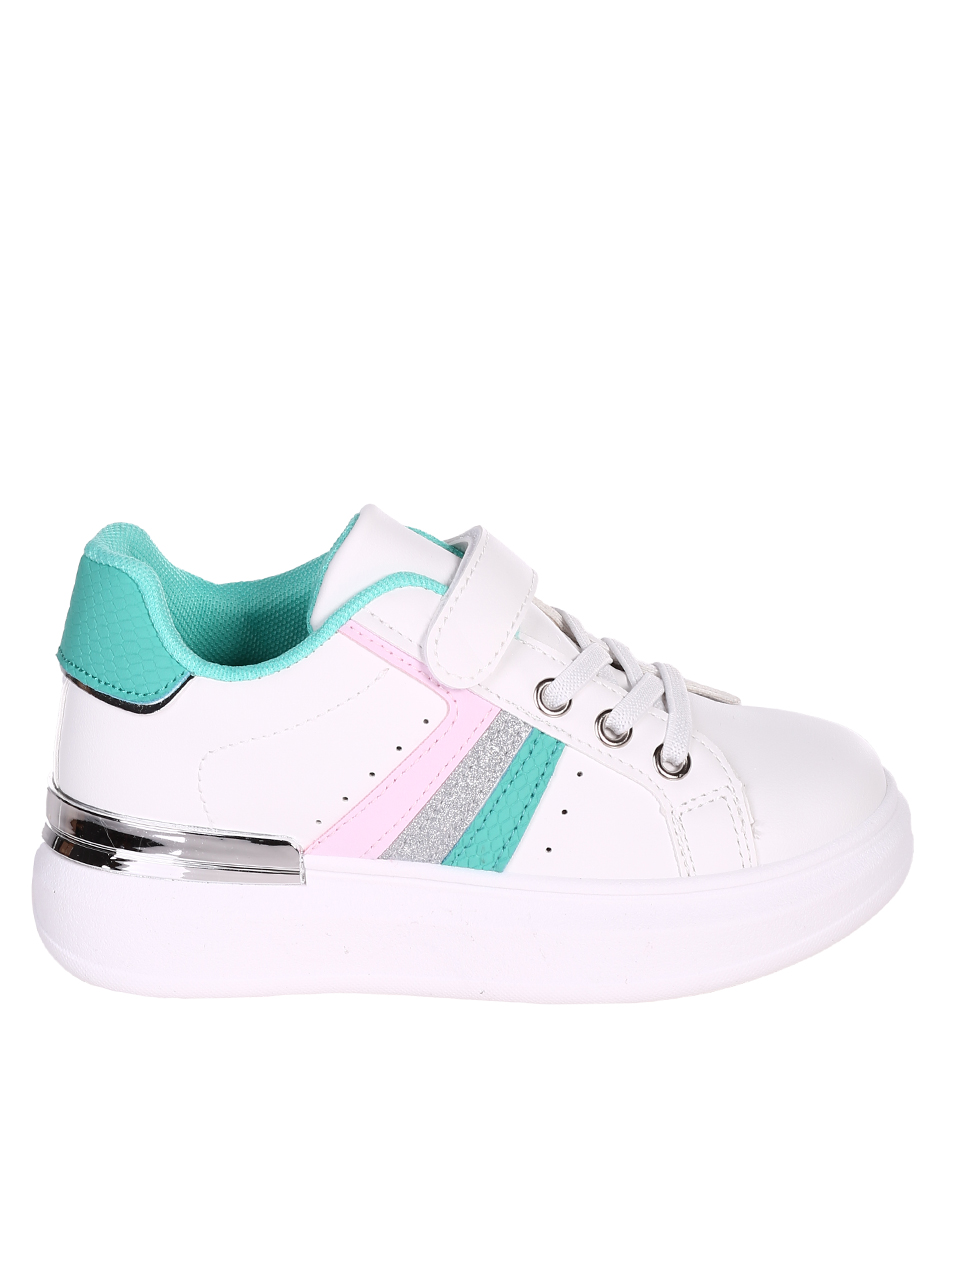 Комфортни детски обувки в бяло и зелено 18U-23051 white/green